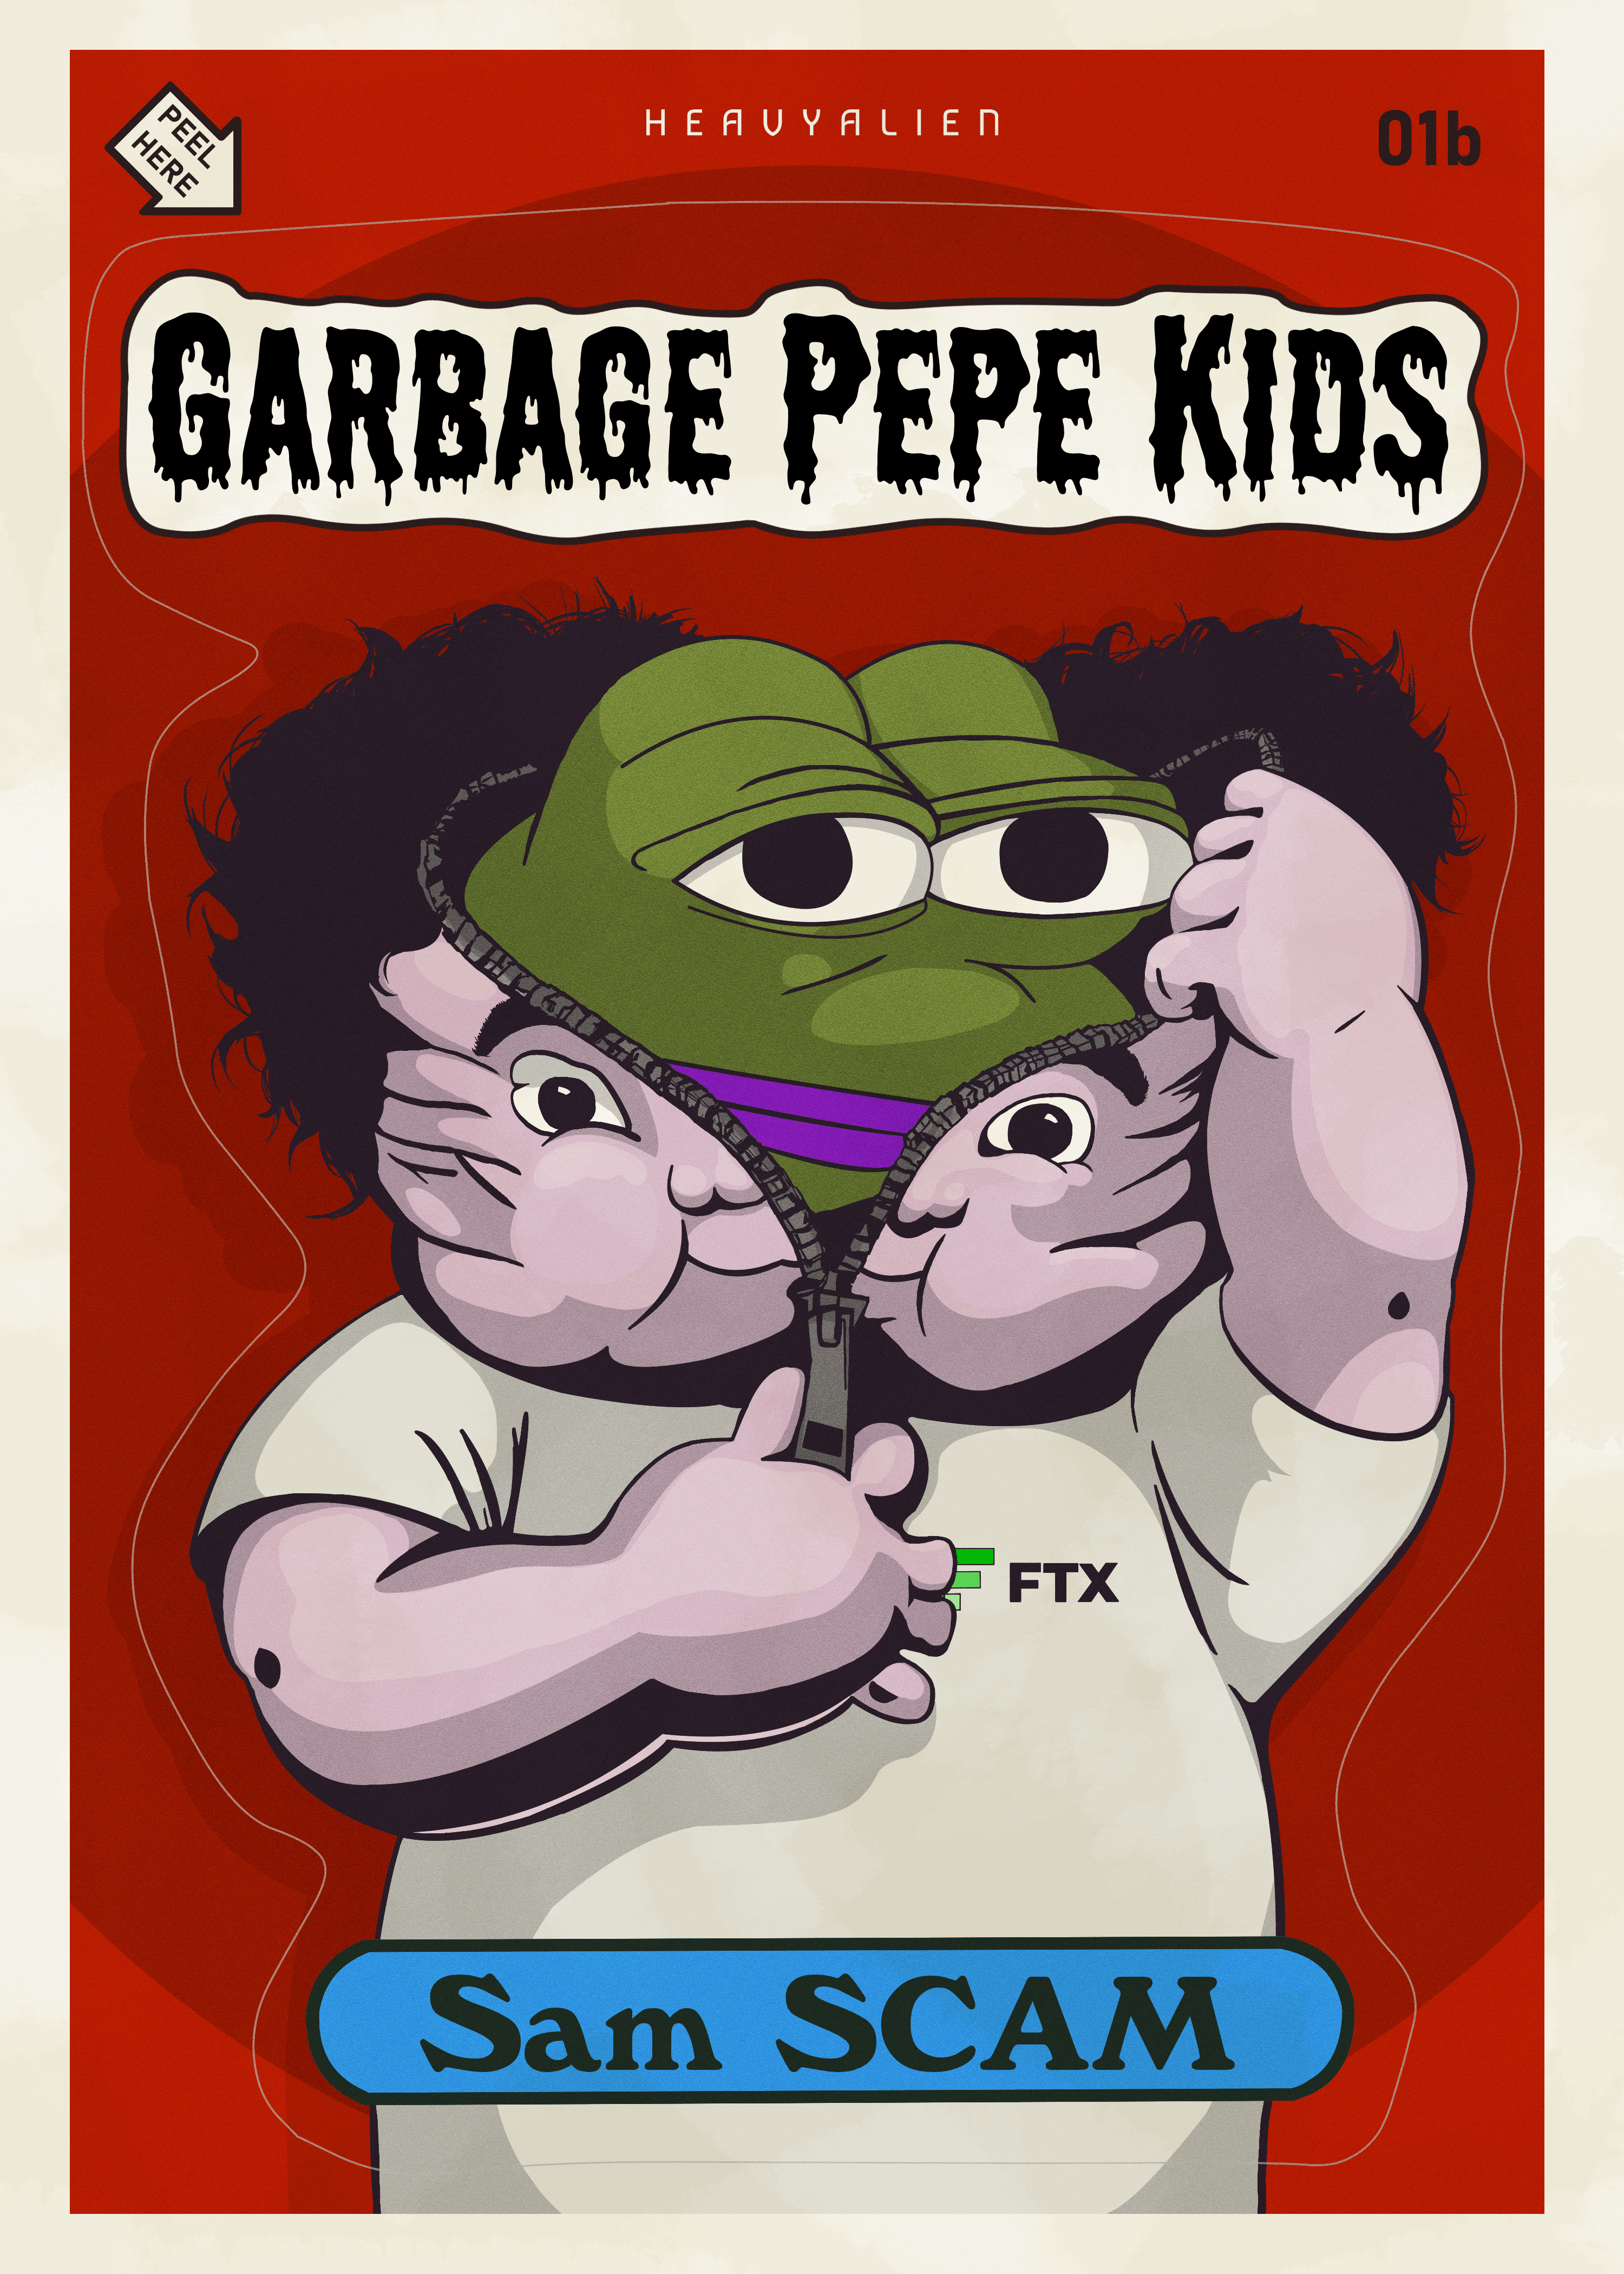 Garbage Pepe Kids #01b - Sam Scam